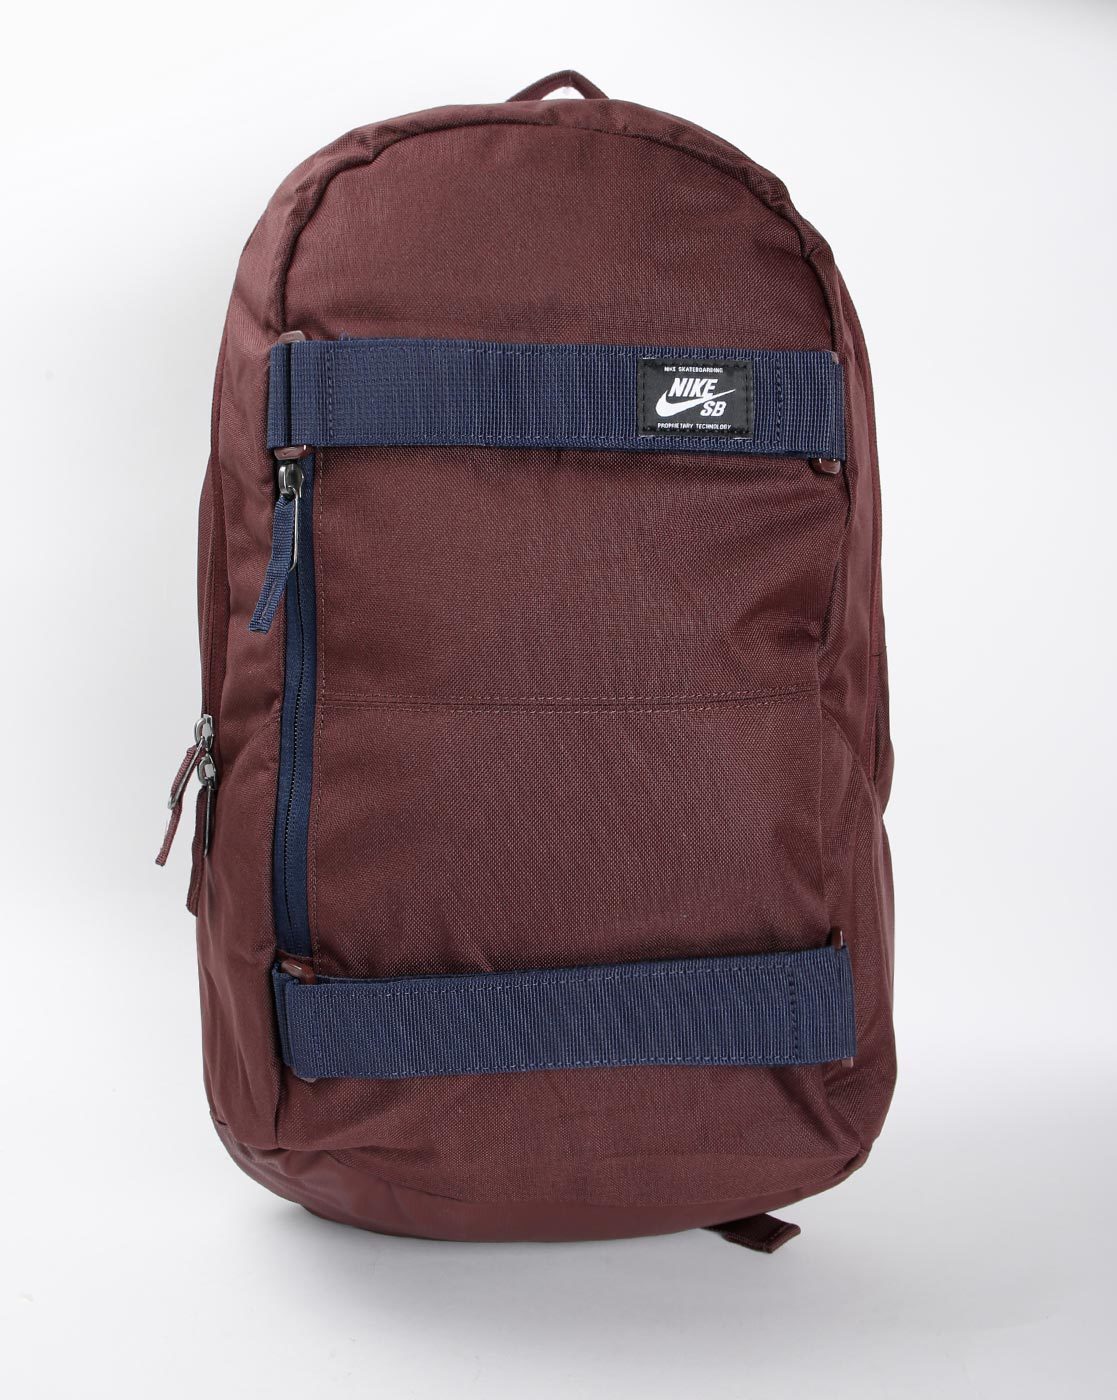 Nike SB Shuttle Backpack Black/Purple - Skate Backpacks & Bags from Native  Skate Store UK